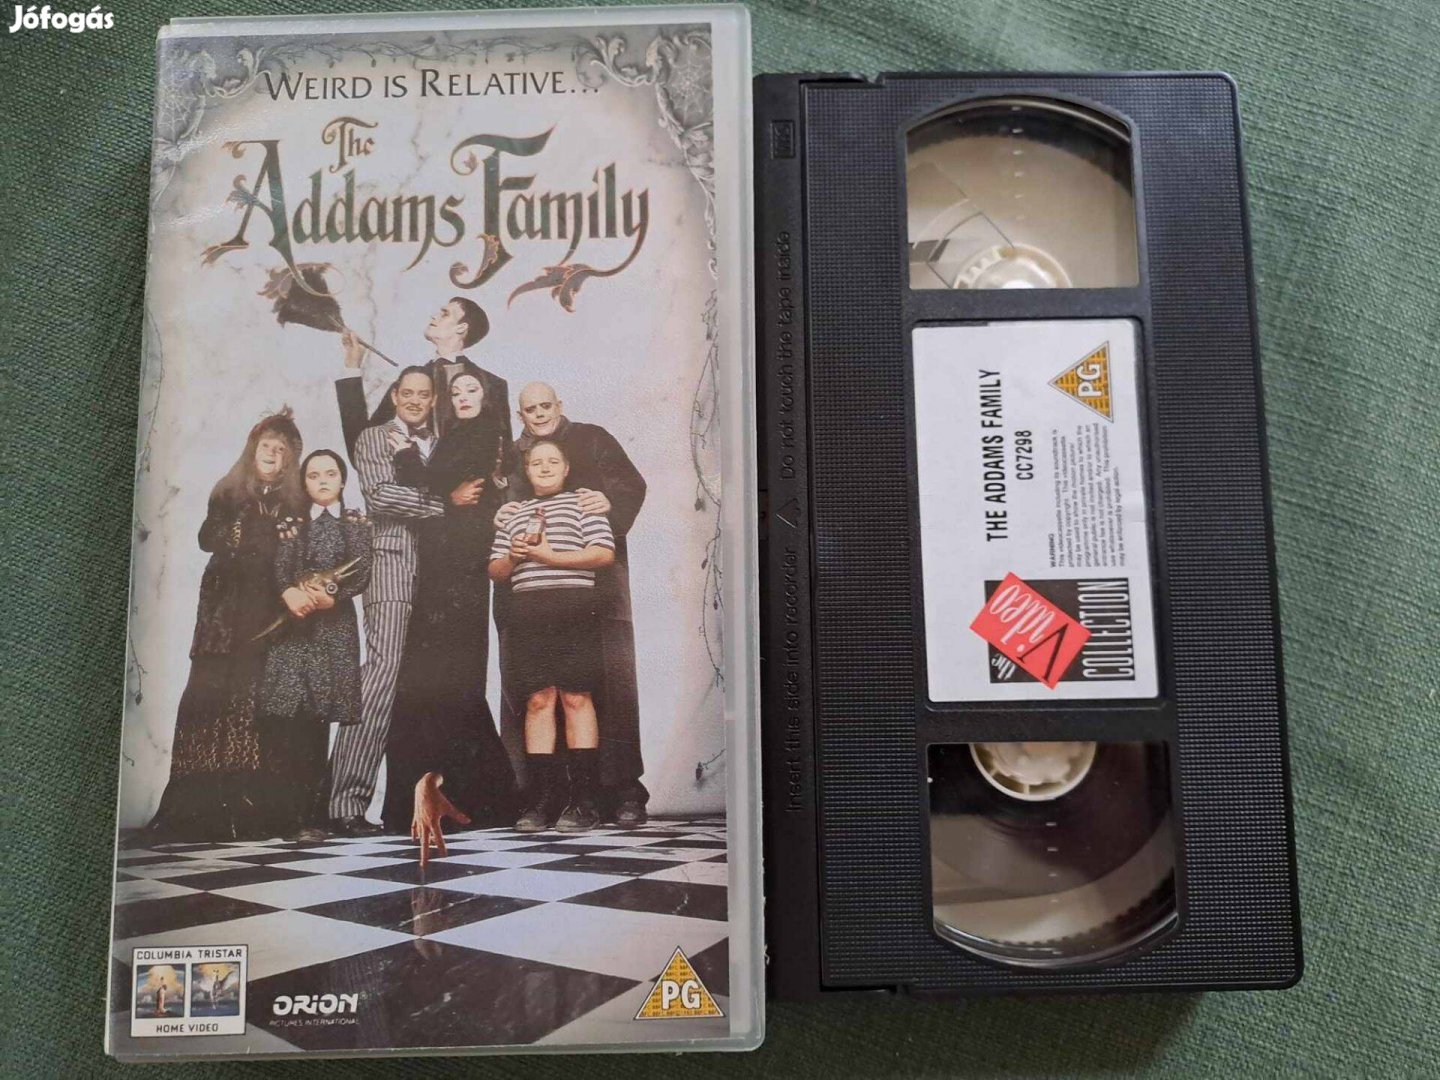 Addams Family VHS - angol nyelv